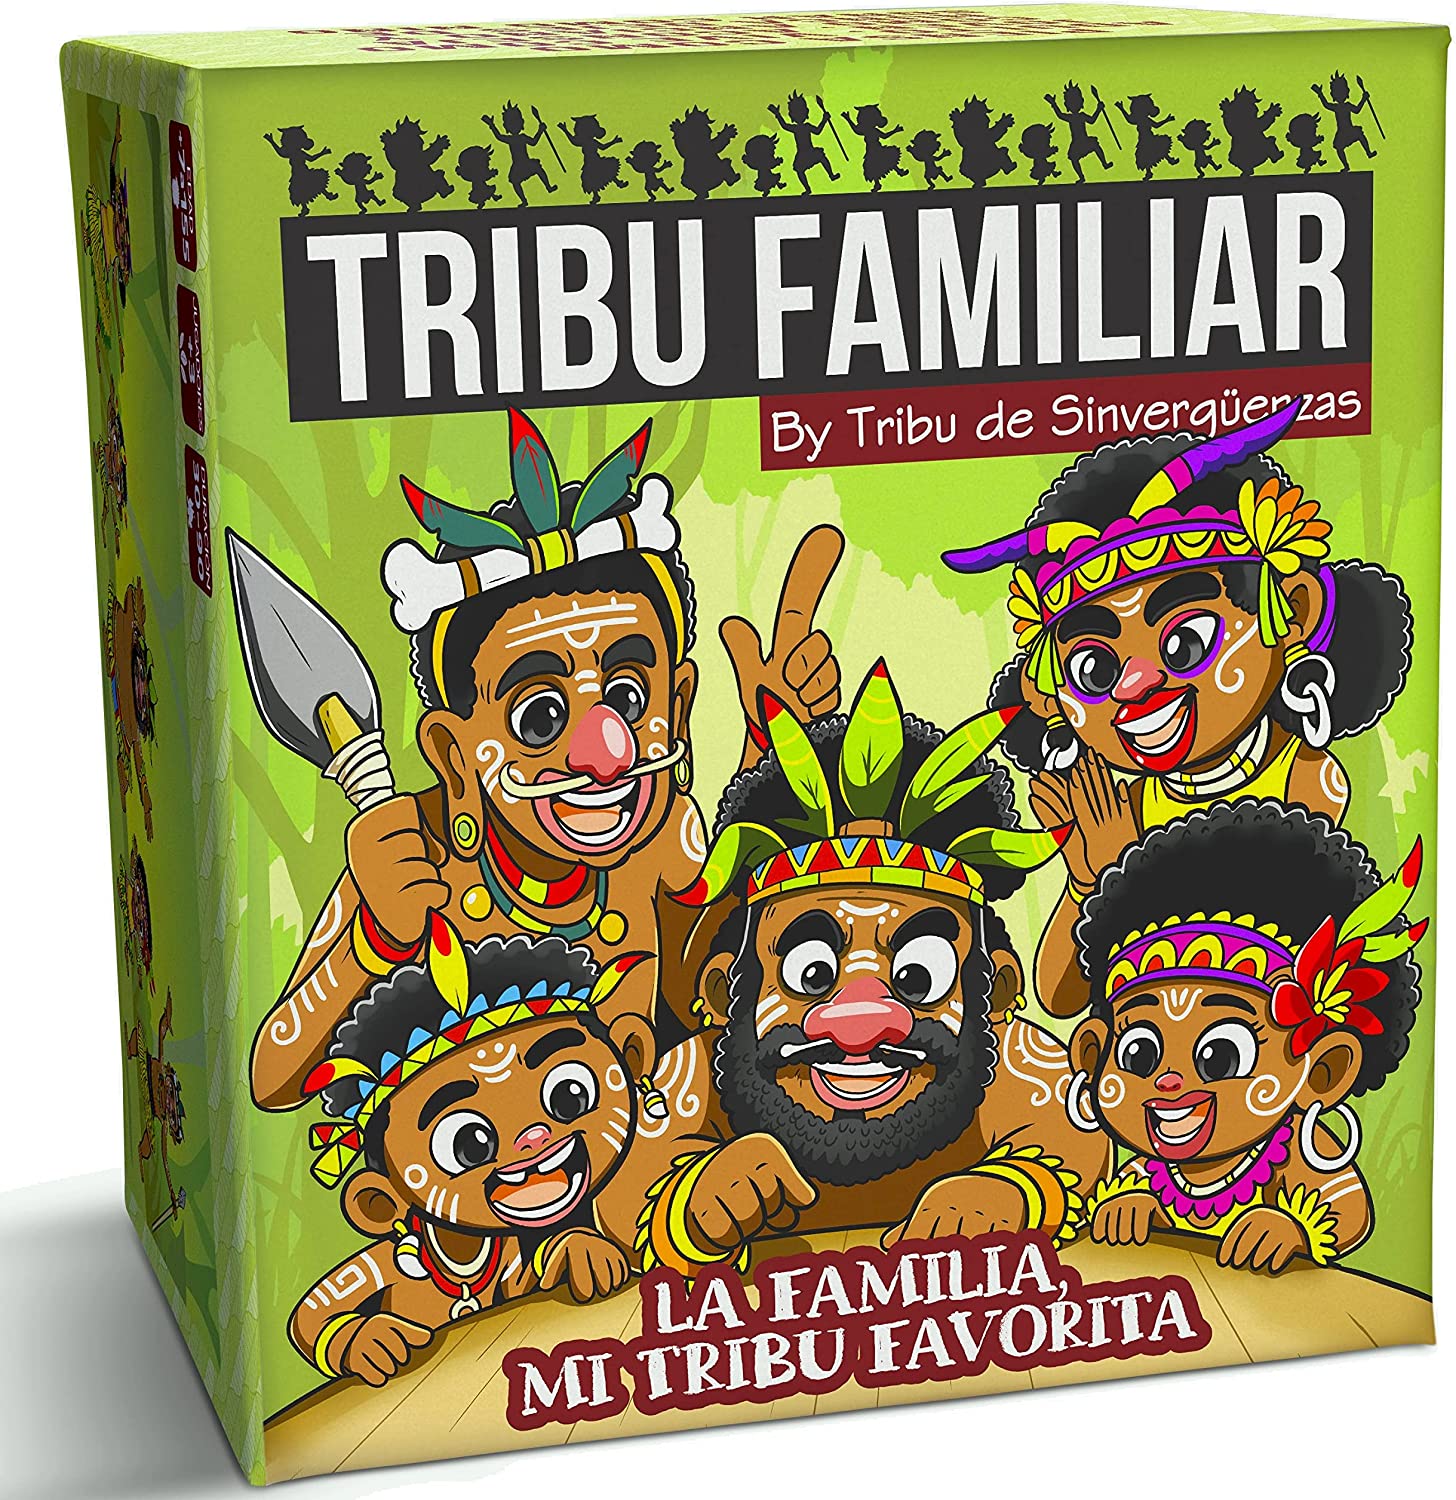 Ver categoría de tribu familiar